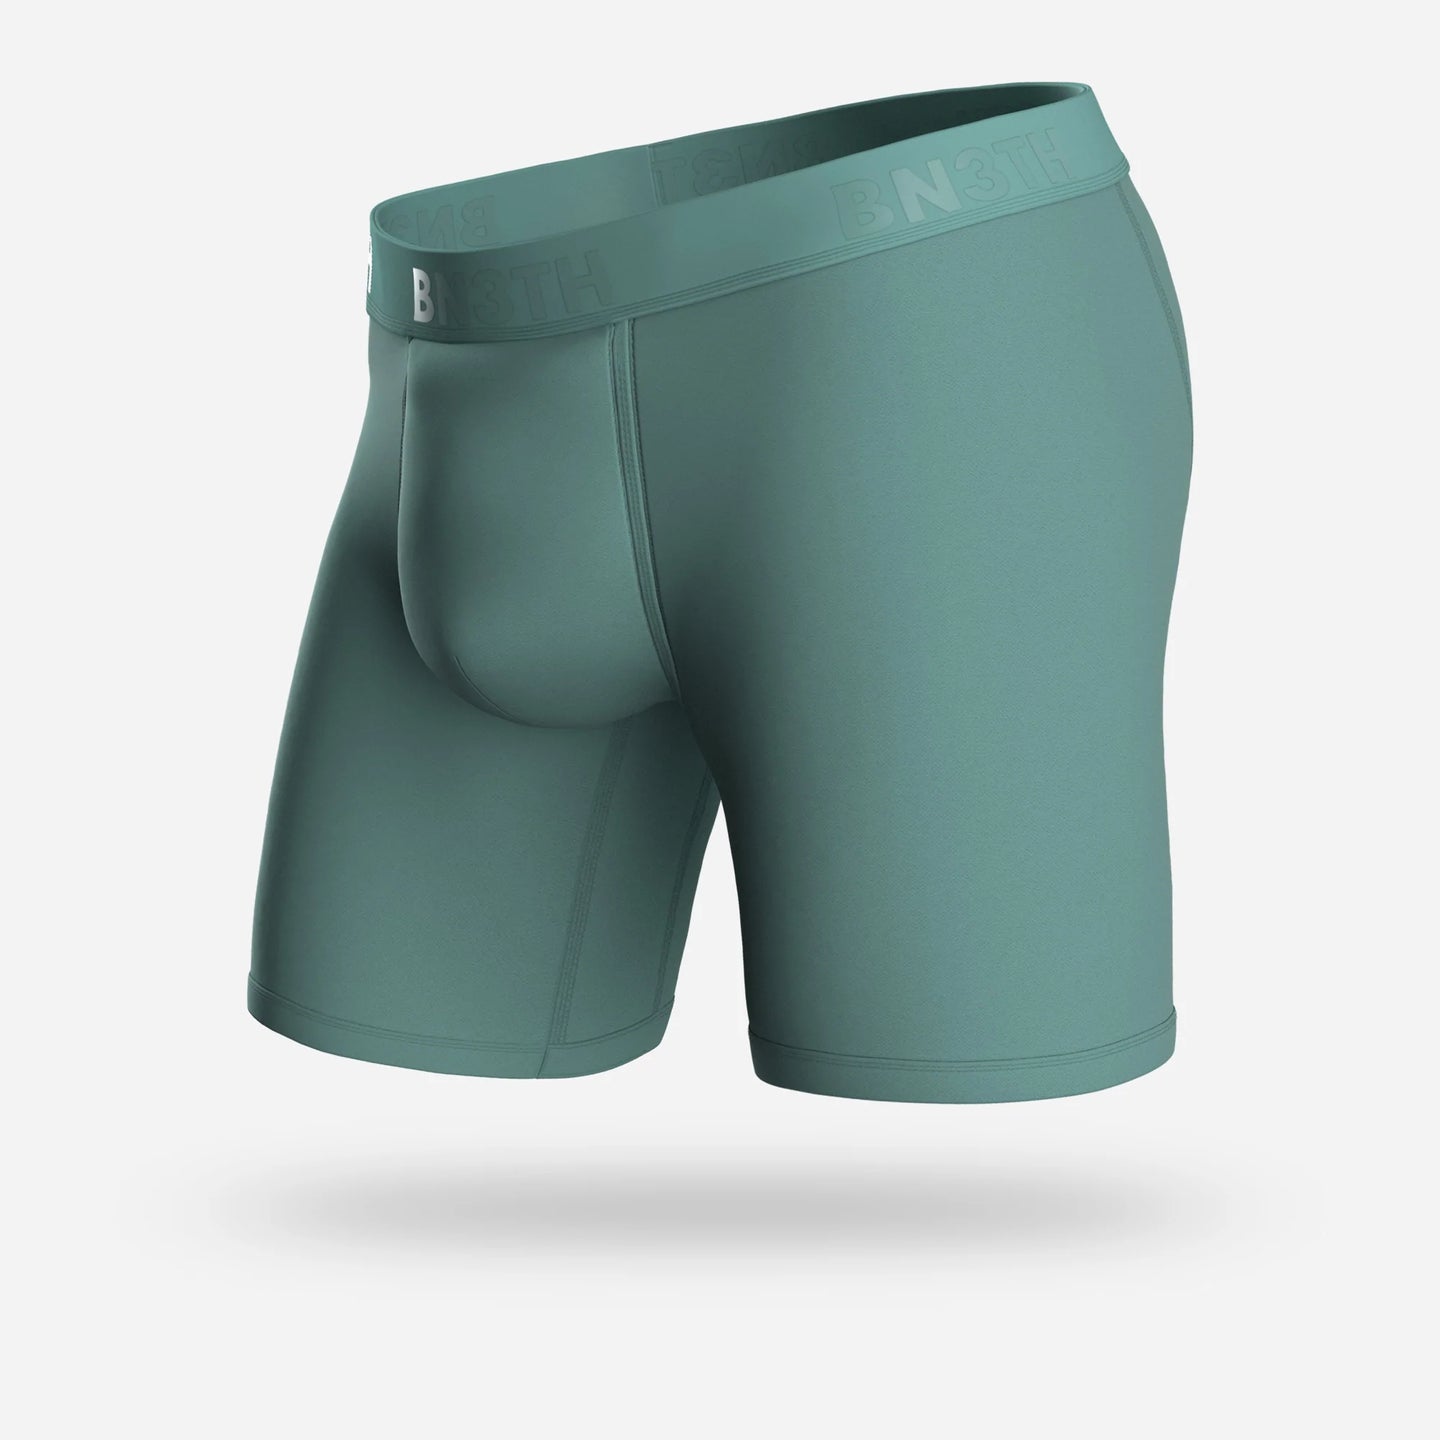 Men's Underwear – COSUBE